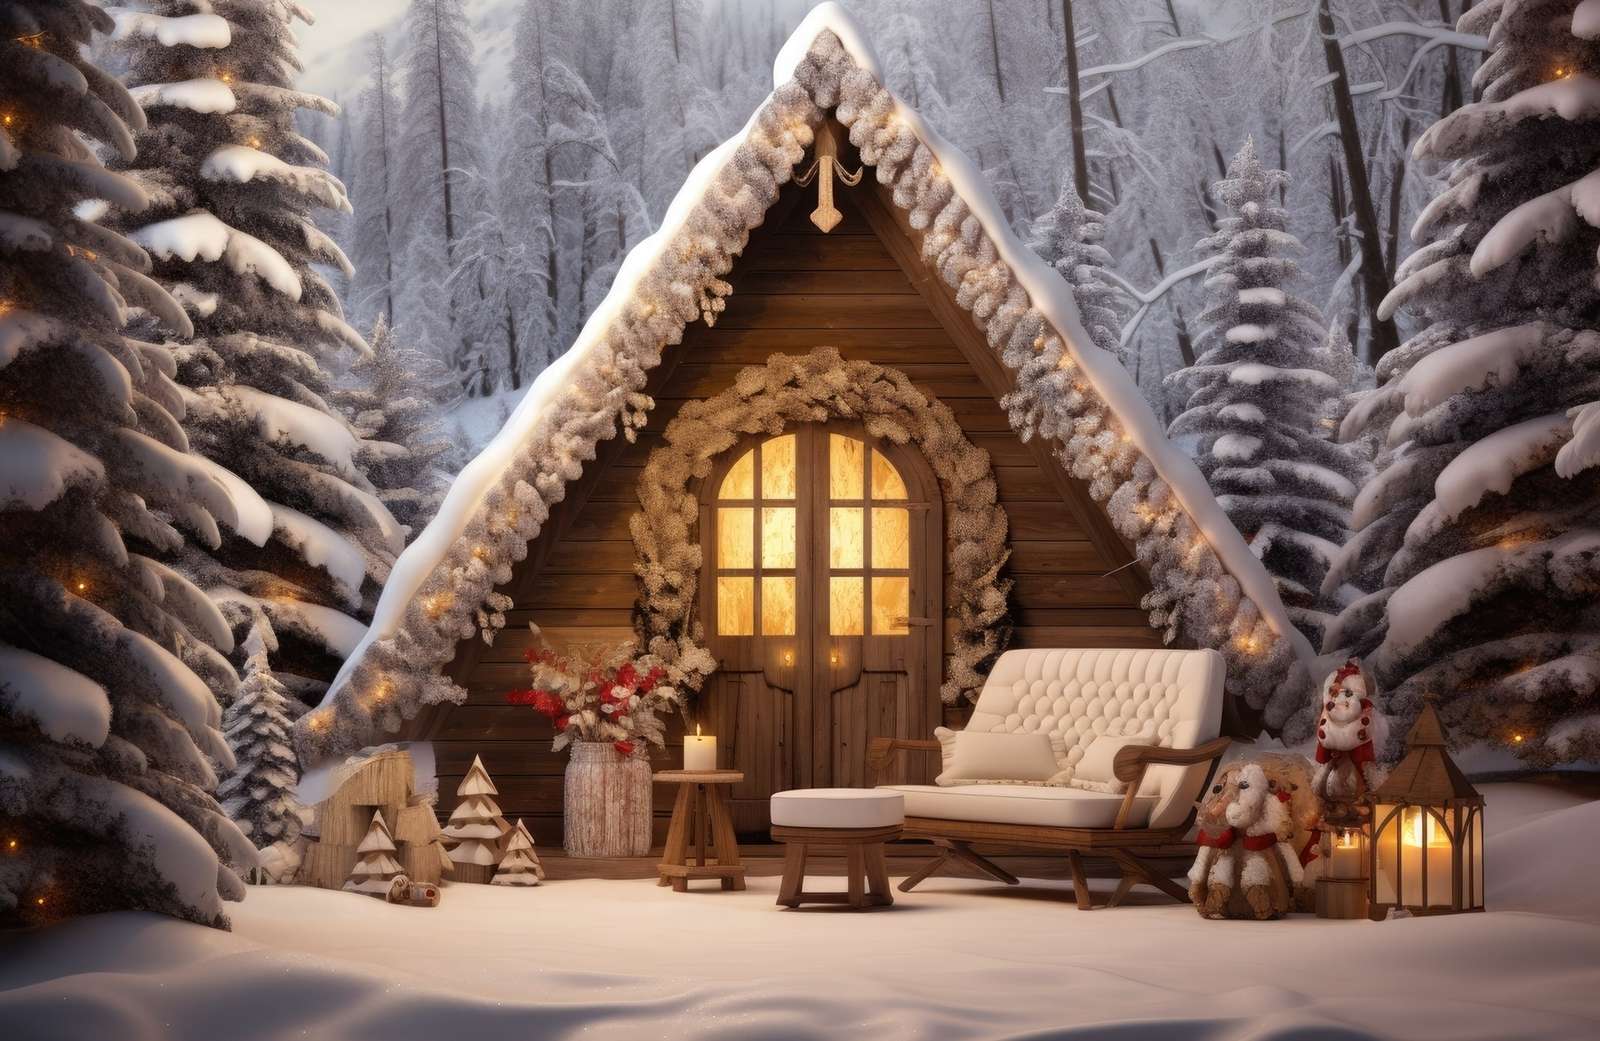 Фонарь и диван в снегу перед освещенным домом пазл онлайн